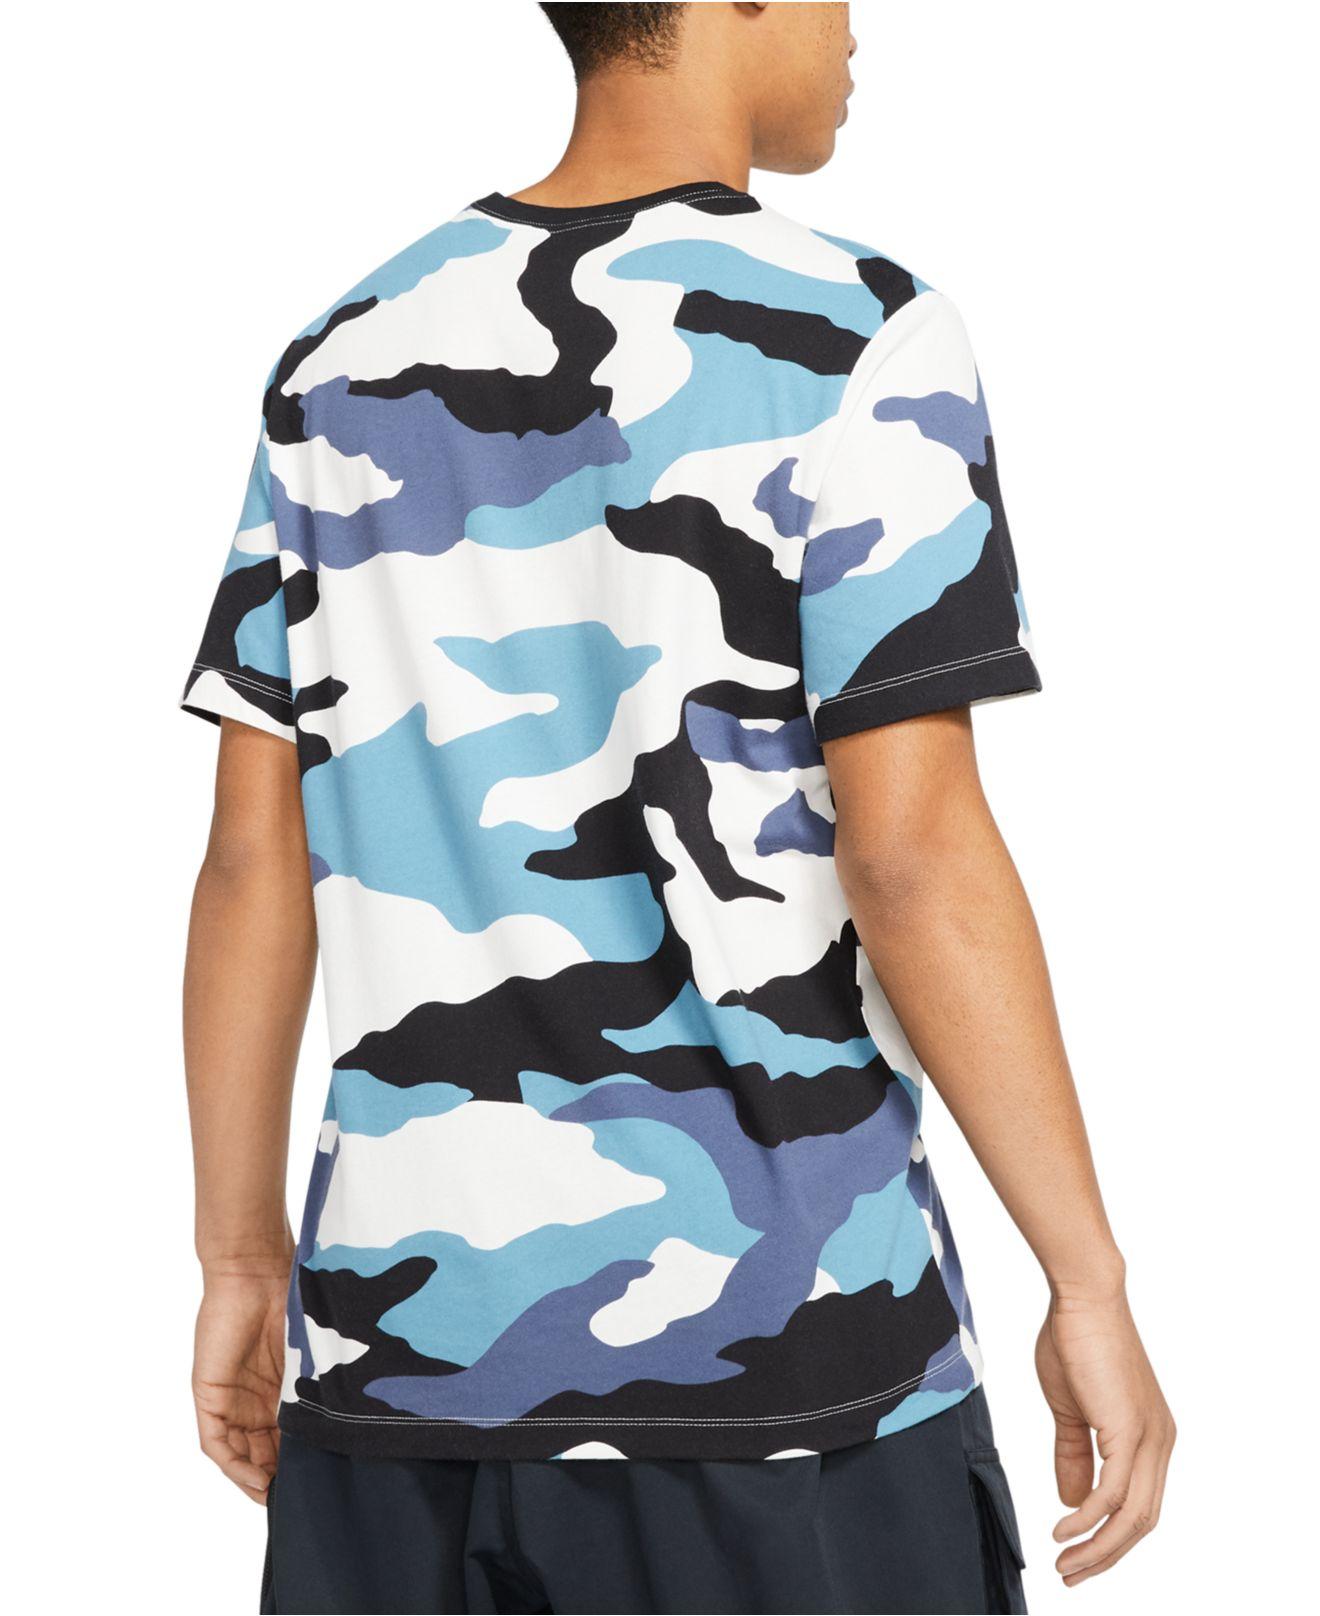 Nike Cotton Sportswear Camo T-shirt in Blue for Men - Lyst